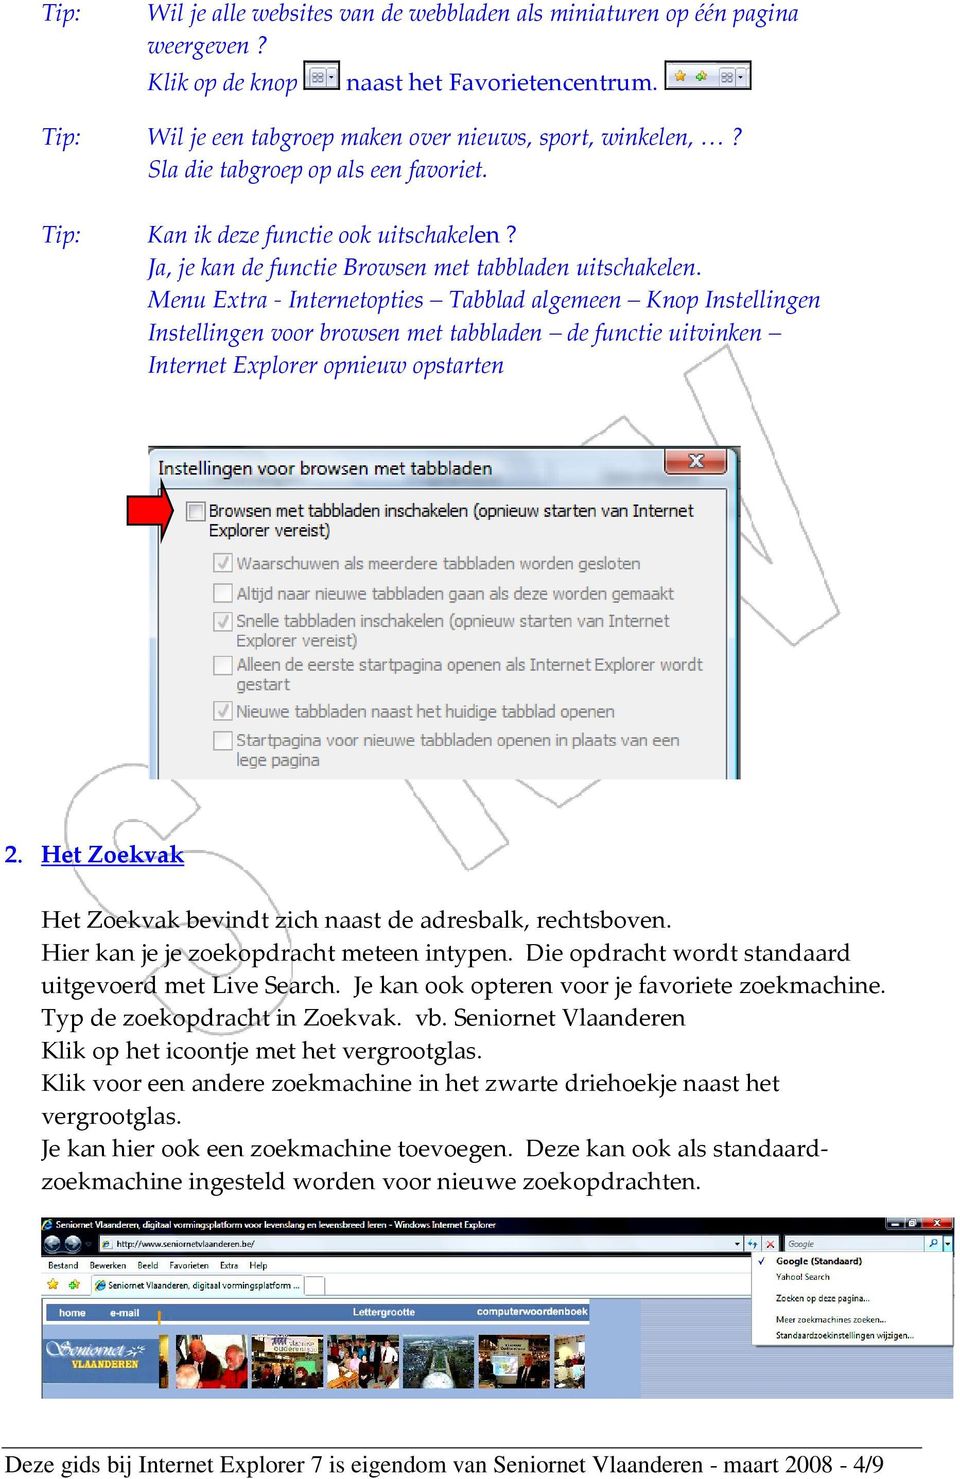 Menu Extra - Internetopties Tabblad algemeen Knop Instellingen Instellingen voor browsen met tabbladen de functie uitvinken Internet Explorer opnieuw opstarten 2.